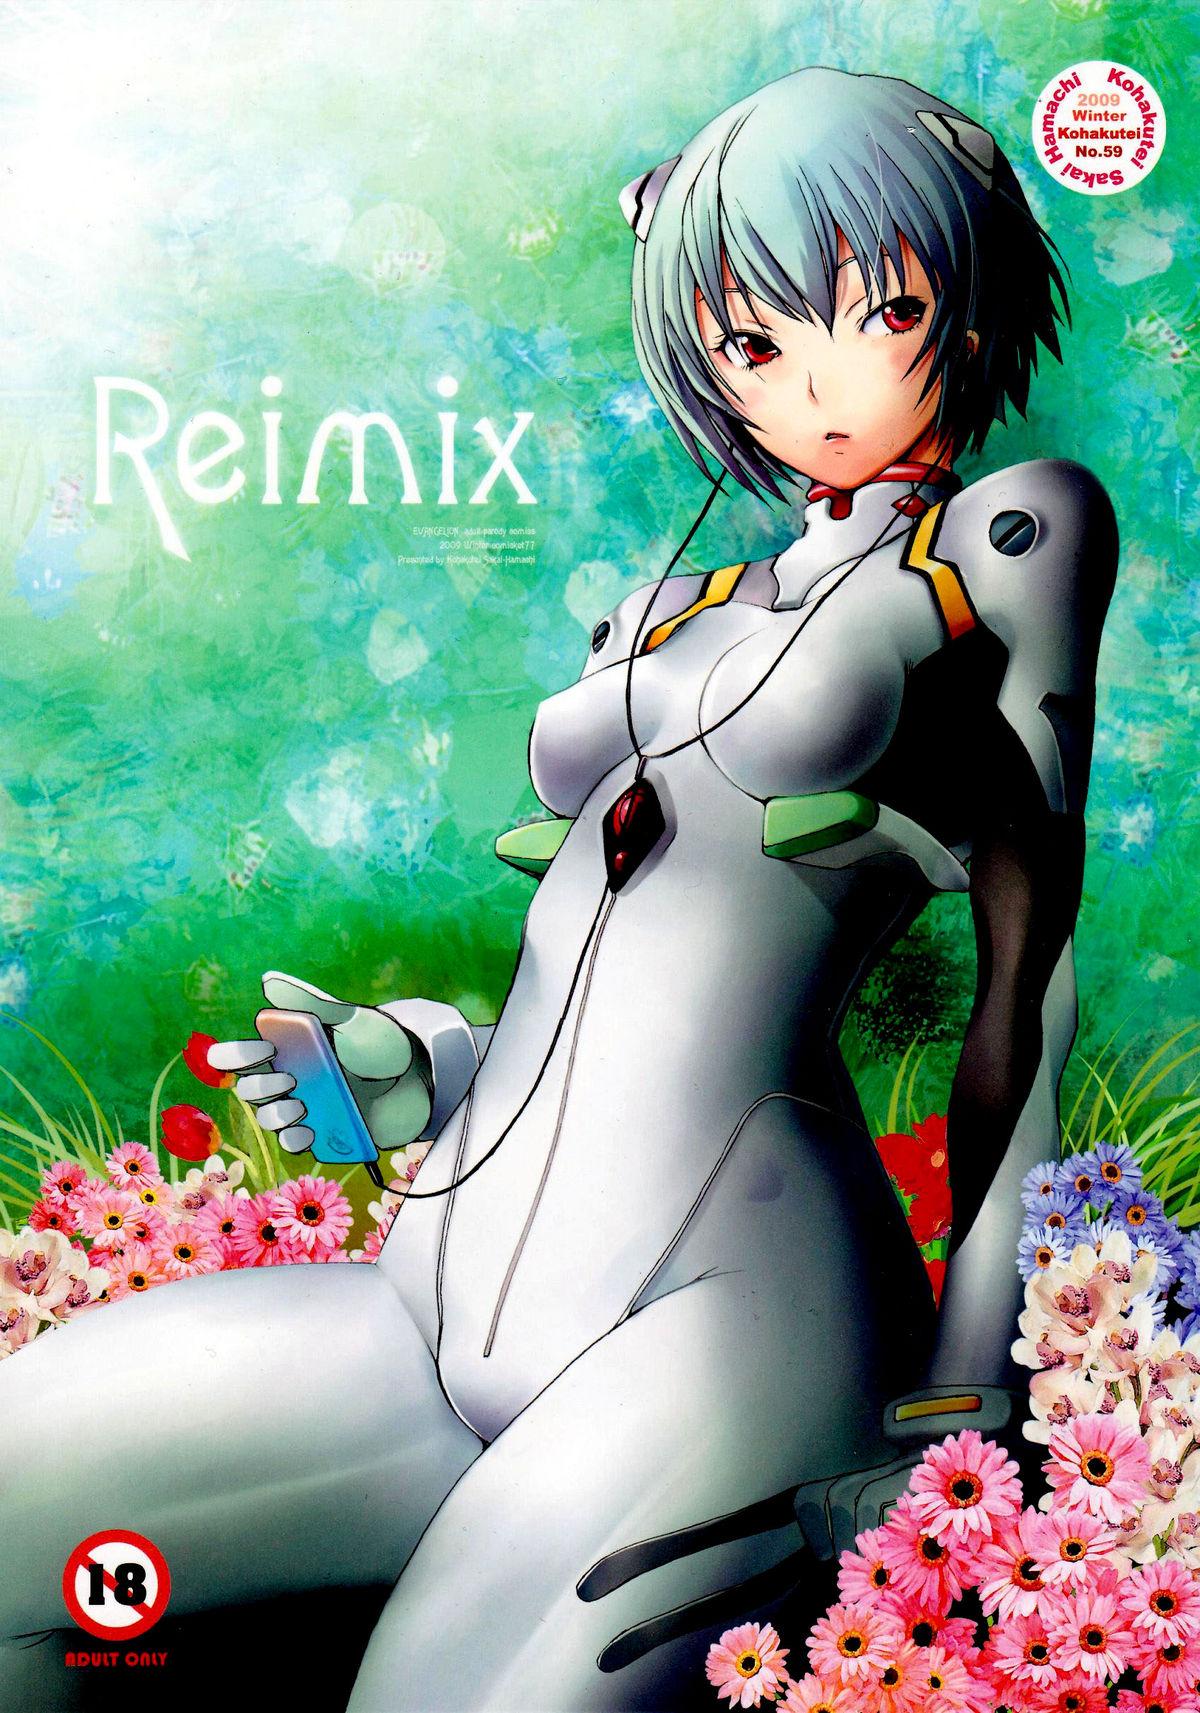 Reimix 0